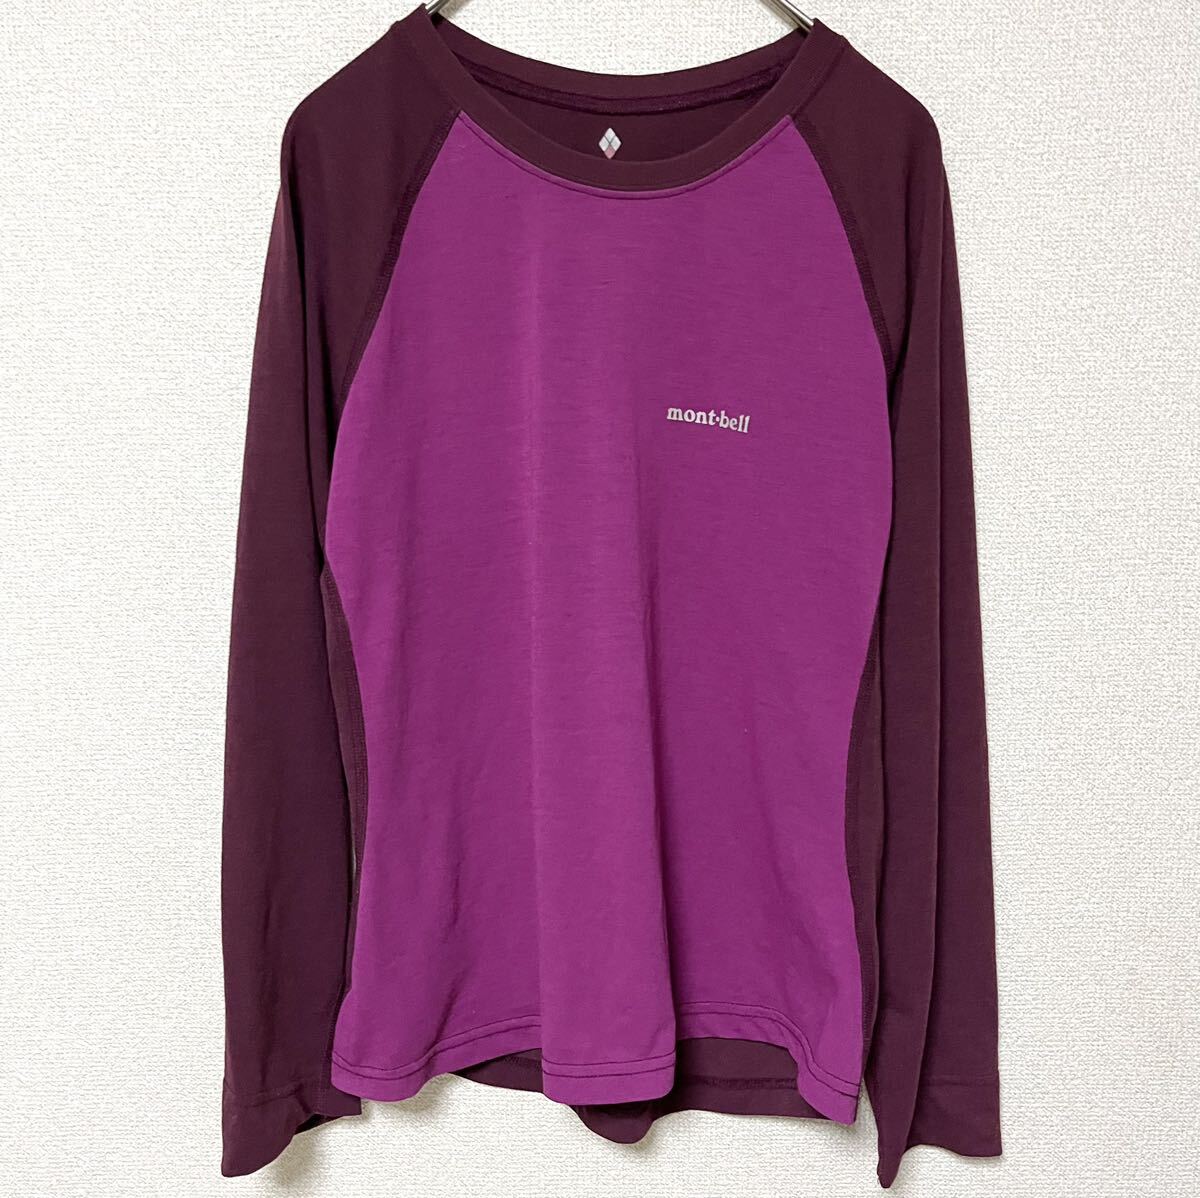 モンベル mont-bell 長袖 Tシャツ★レディースS★ピンク 紫 小豆色 インナーウェア ロンT カットソー ポリエステル製100% アウトドア 登山の画像1